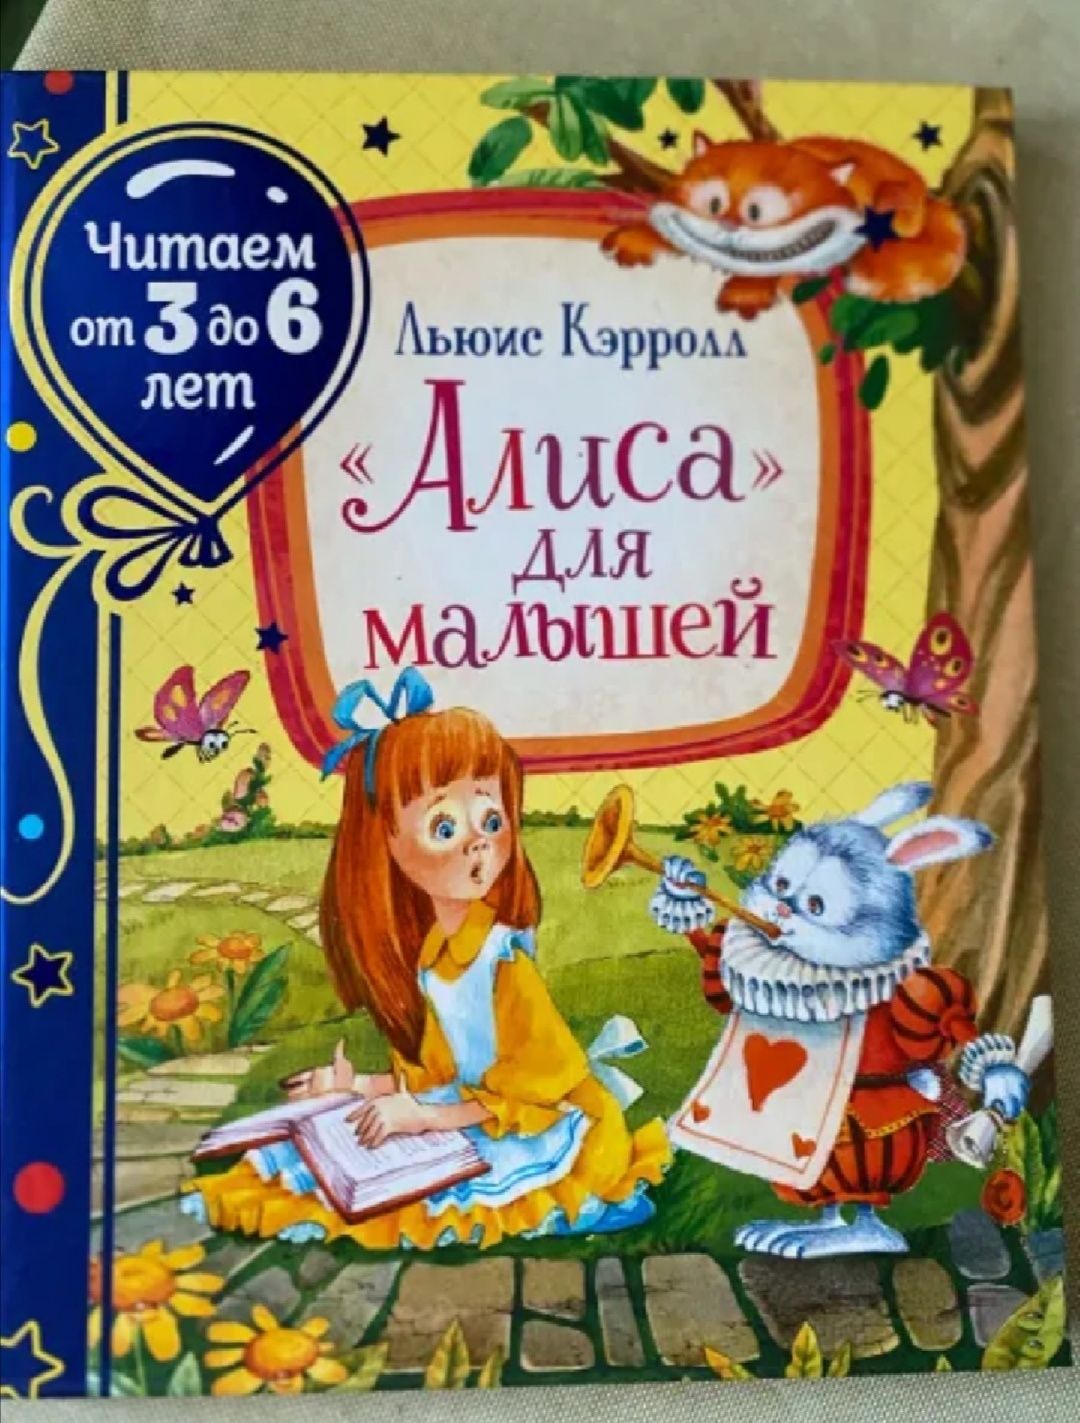 Продам книгу Алиса для малышей